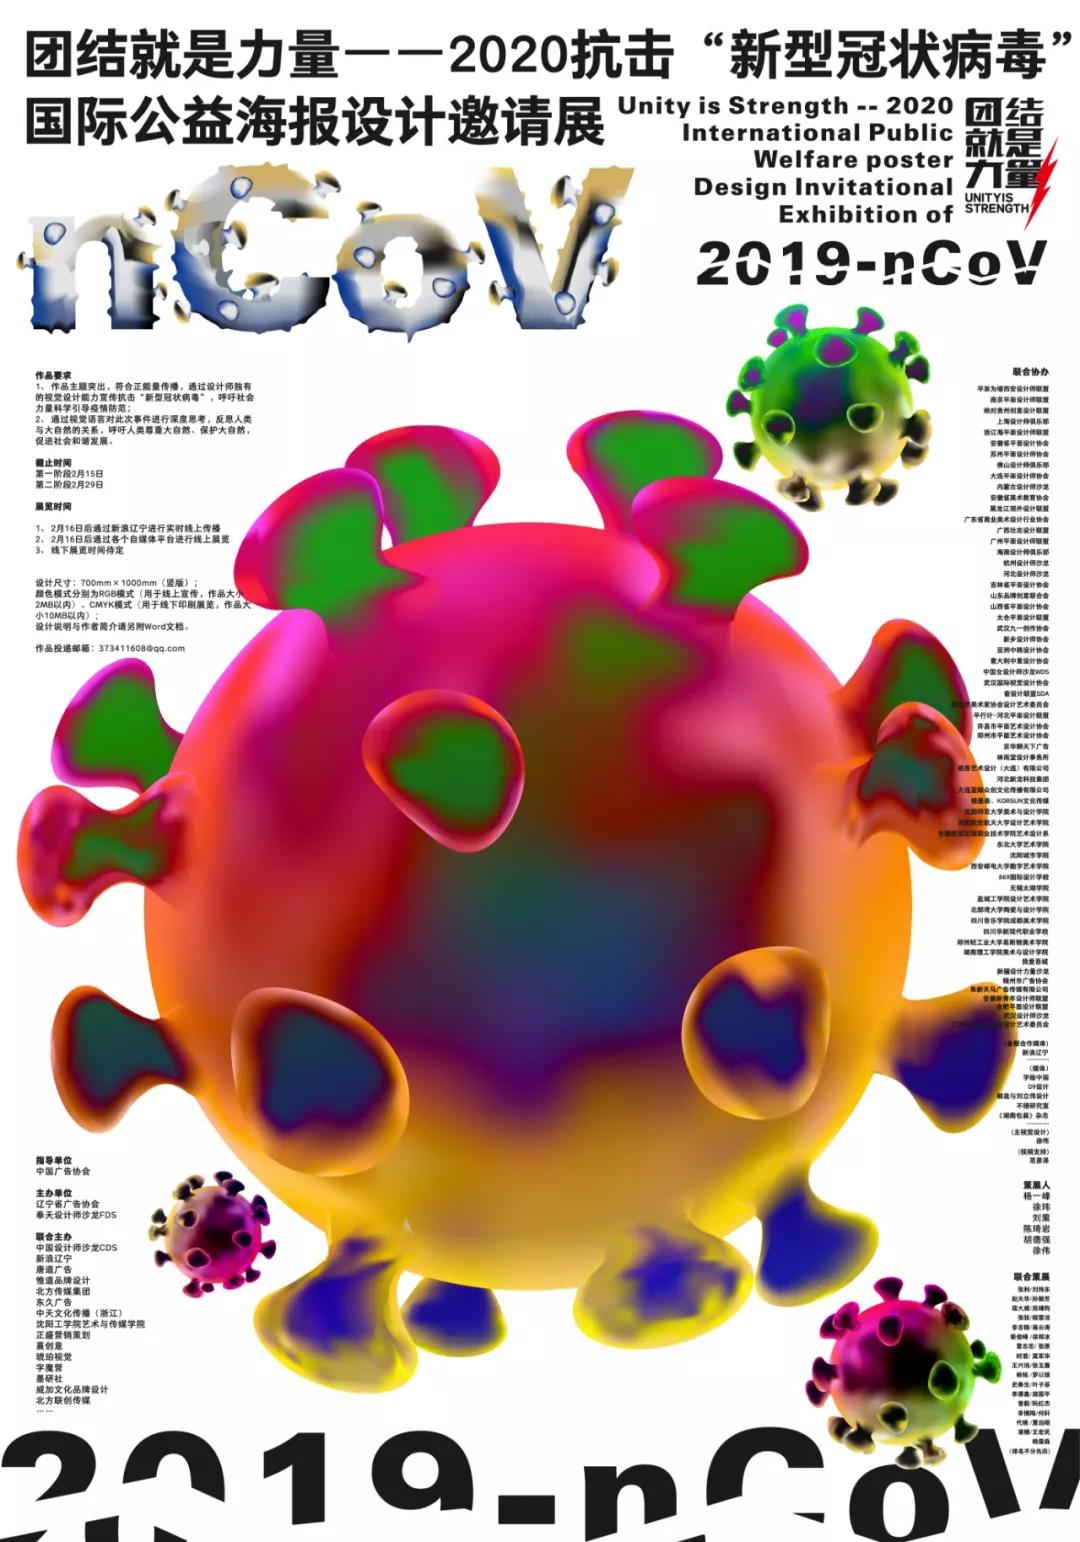 设计师专题4团结就是力量2020抗击新型冠状病毒国际公益海报设计邀请